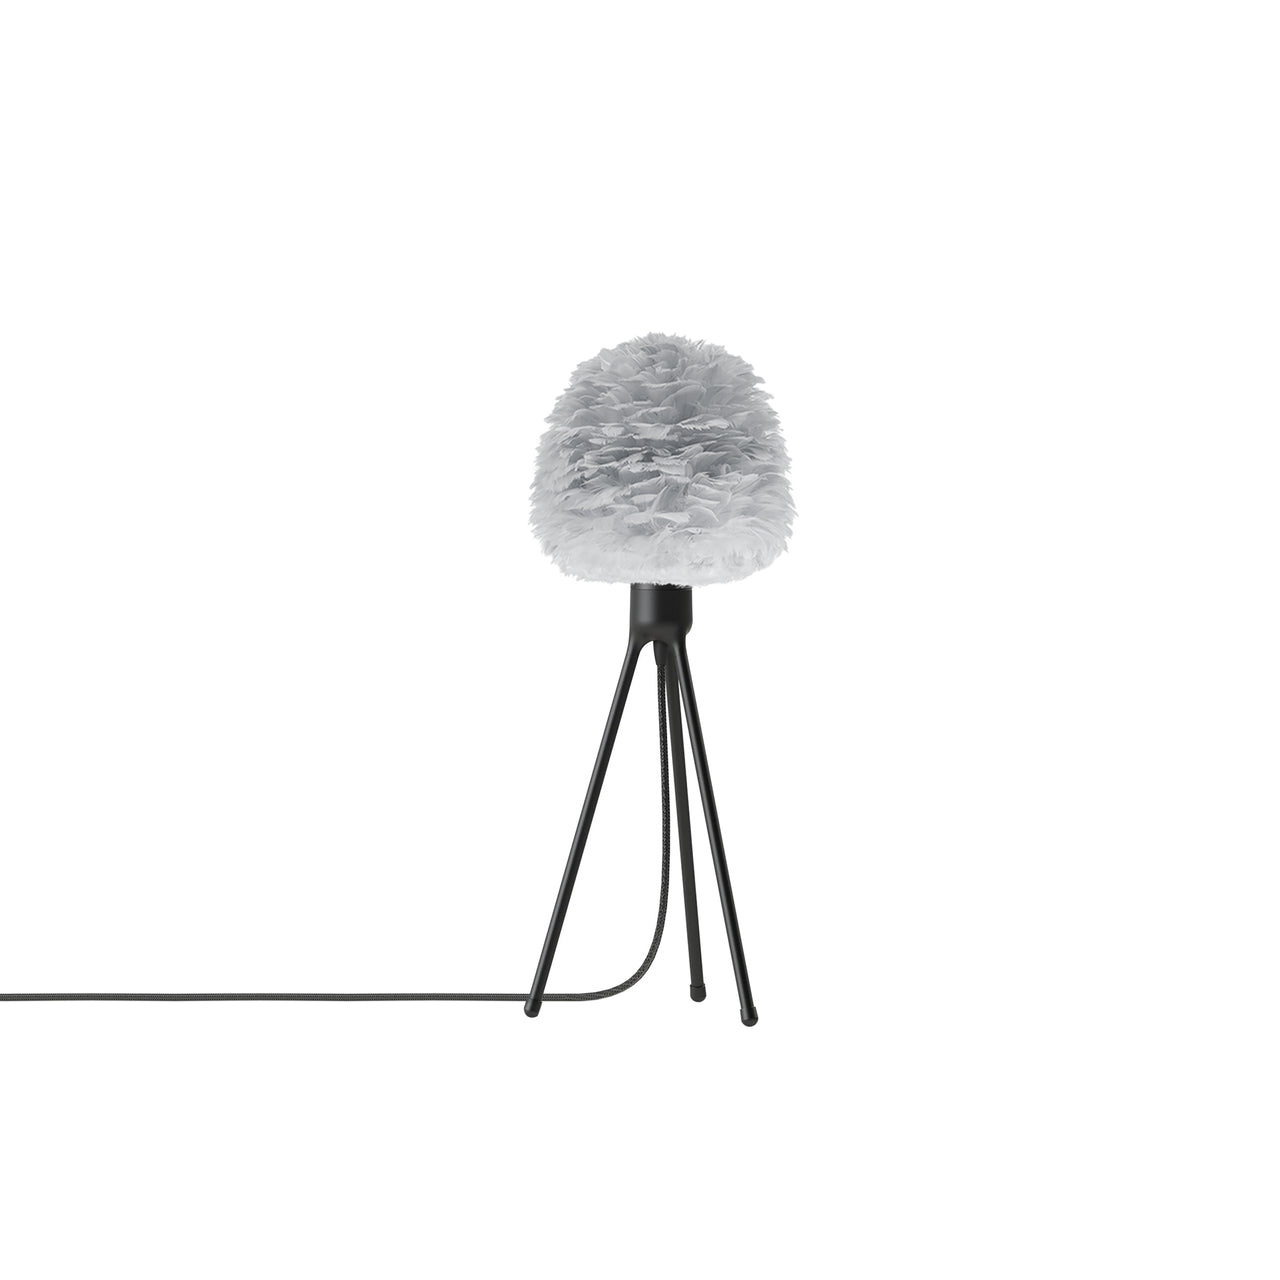 Eos Evia Tripod Table Lamp: Mini - 11.8